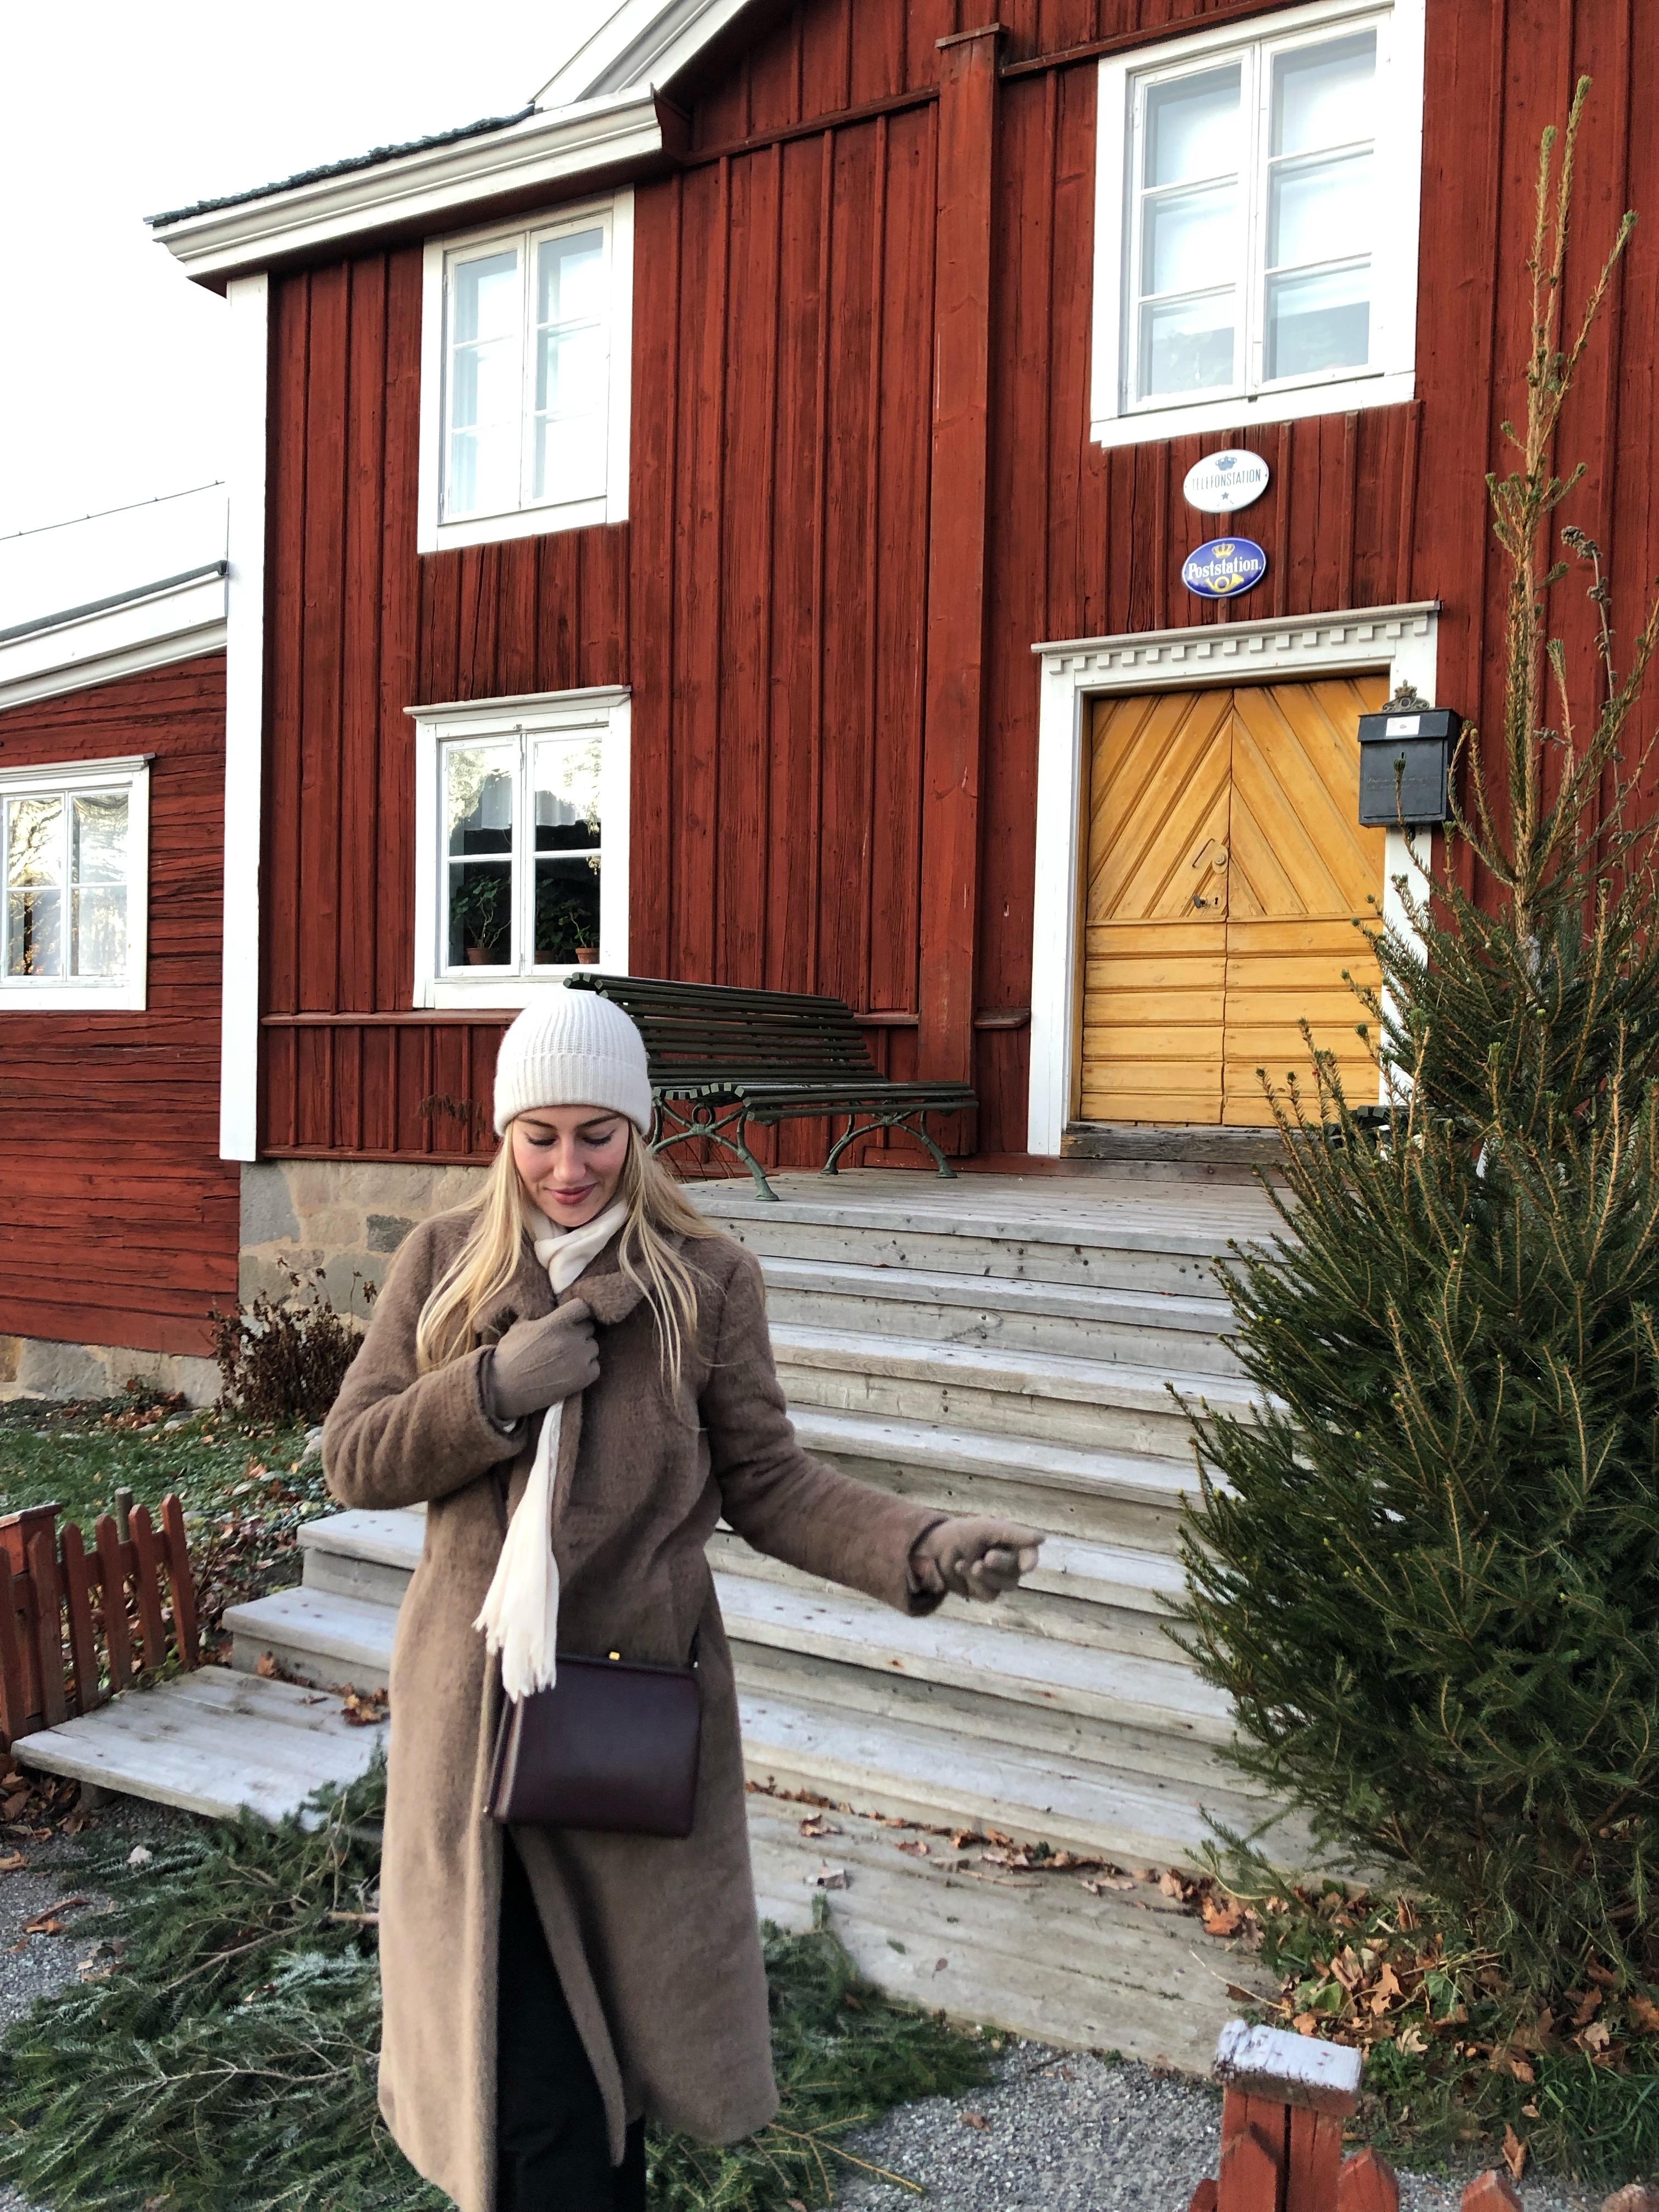 Ach wie schön wäre so ein Schwedenhaus ✨ #schweden #stockholm #holzhaus #gemütlich